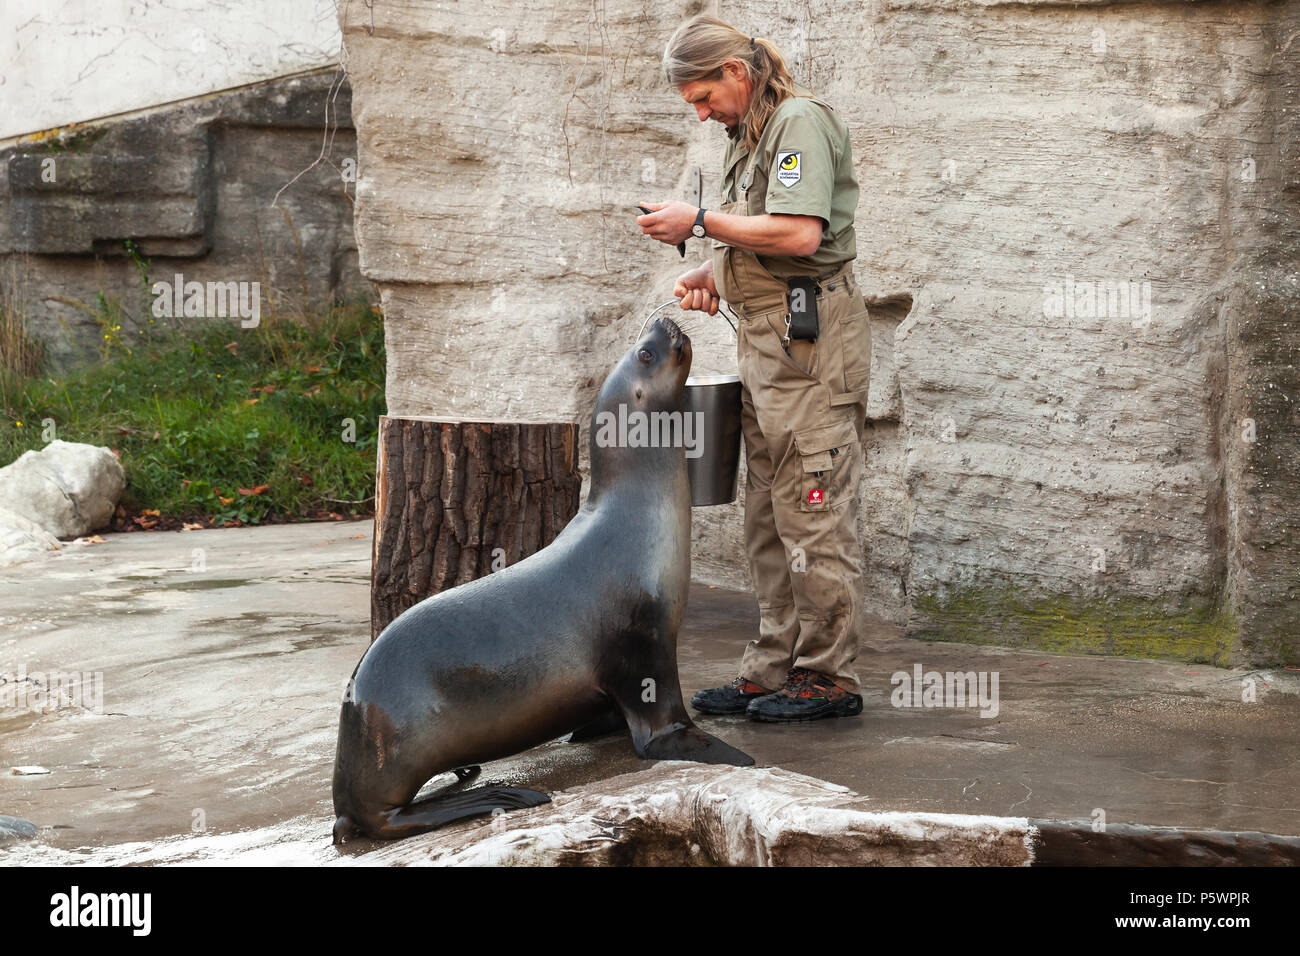 Wien, Österreich - November 3, 2015: Zoo Keeper des Wiener Zoo feeds sea lion mit Fisch Stockfoto